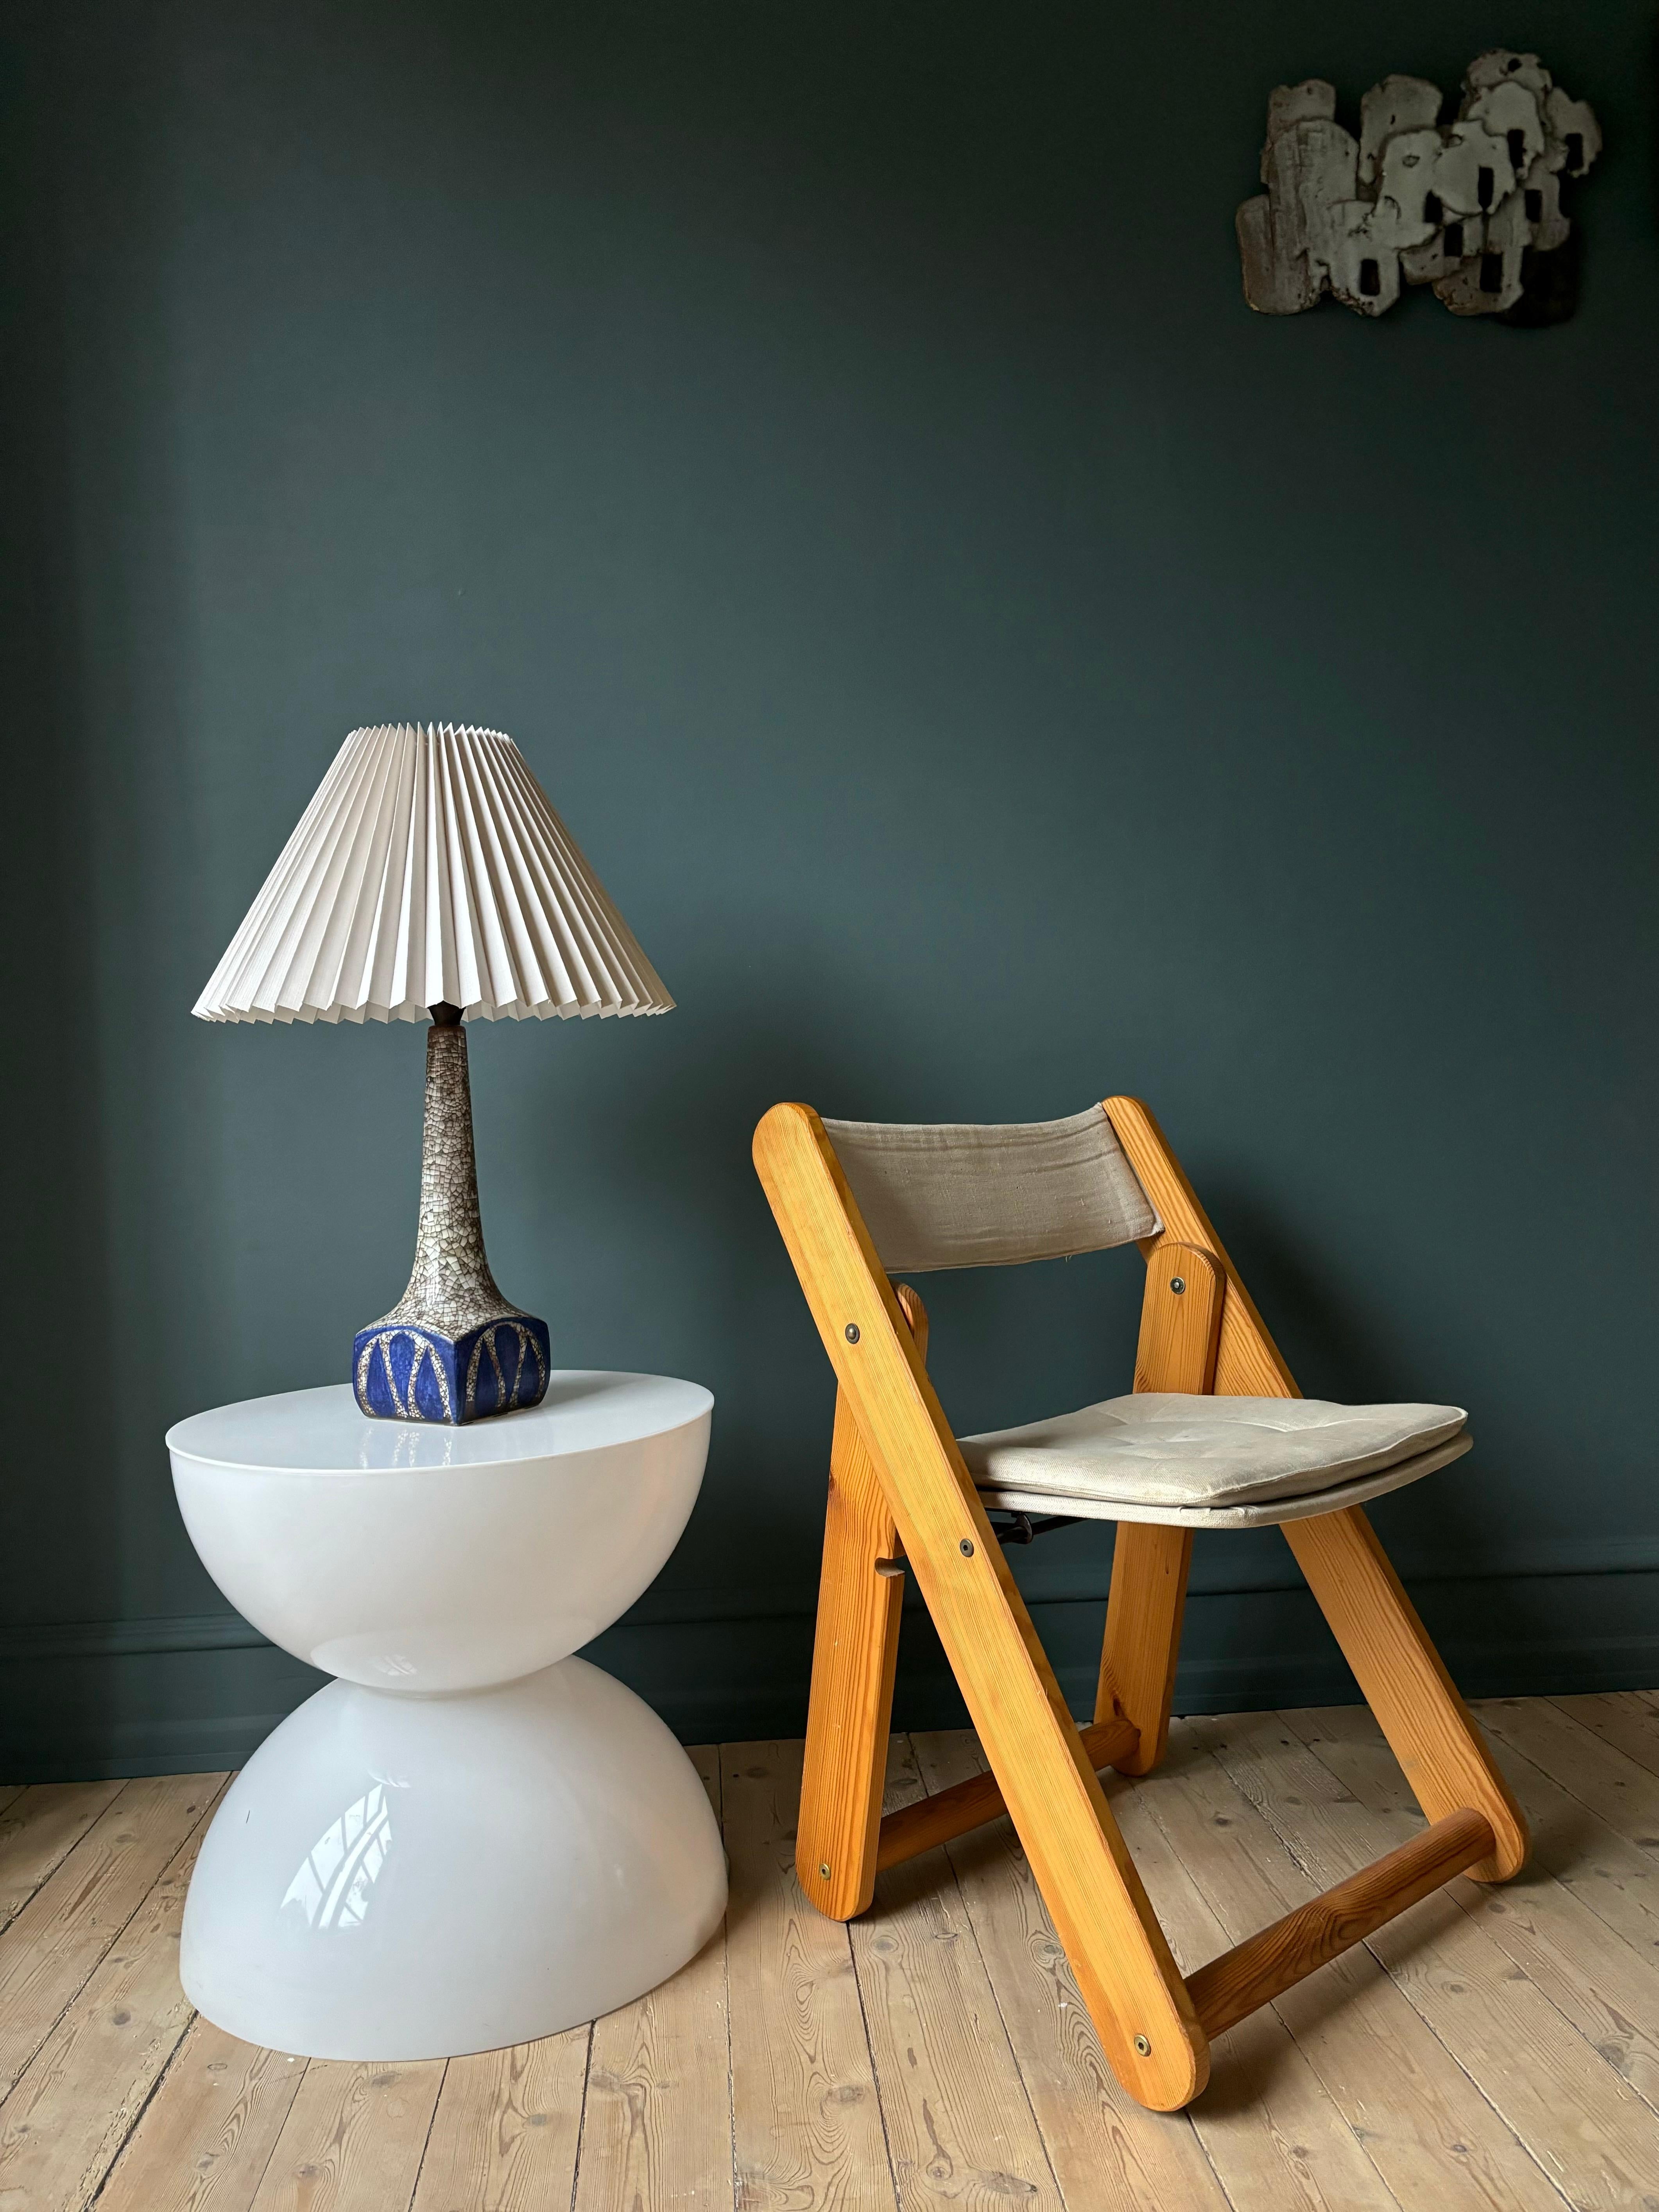 Lampe de table haute et élancée en céramique de style scandinave moderne du milieu du siècle, conçue par Marianne Starck pour Michael Andersen & Son. Fabriqué à la main sur l'île danoise de Bornholm dans les années 1960. Nuances grises chaudes de la